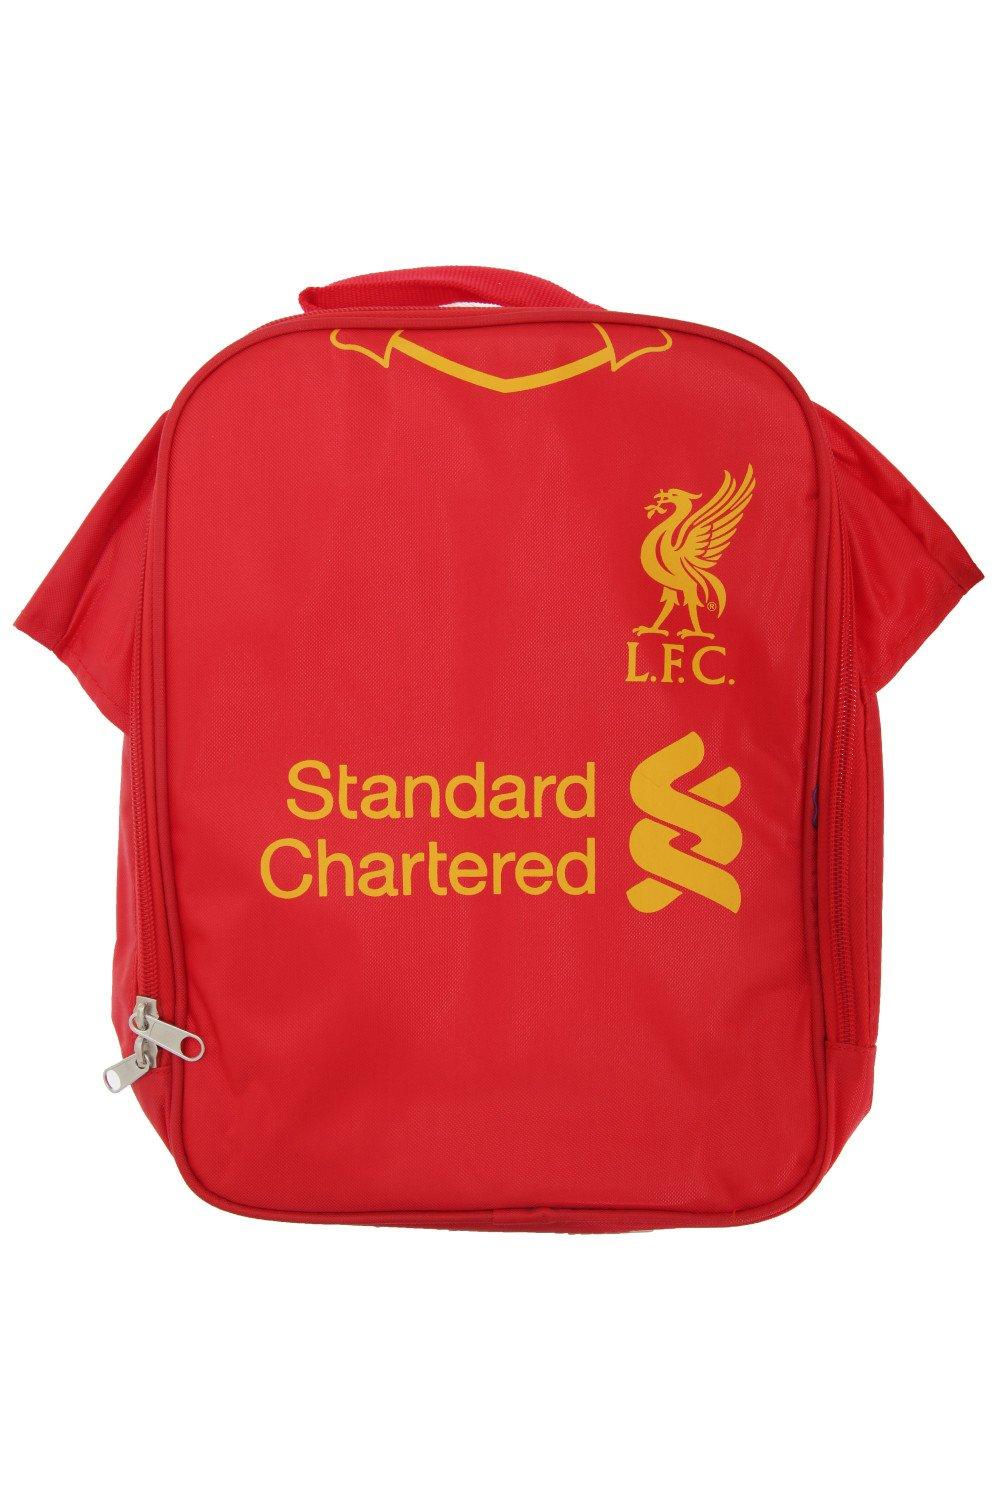 Официальная изолированная сумка для обеда/холодильник для футбольной рубашки Liverpool FC, красный органайзер fit 65646 29 5 х 22 х 7 6 см двухсторонний